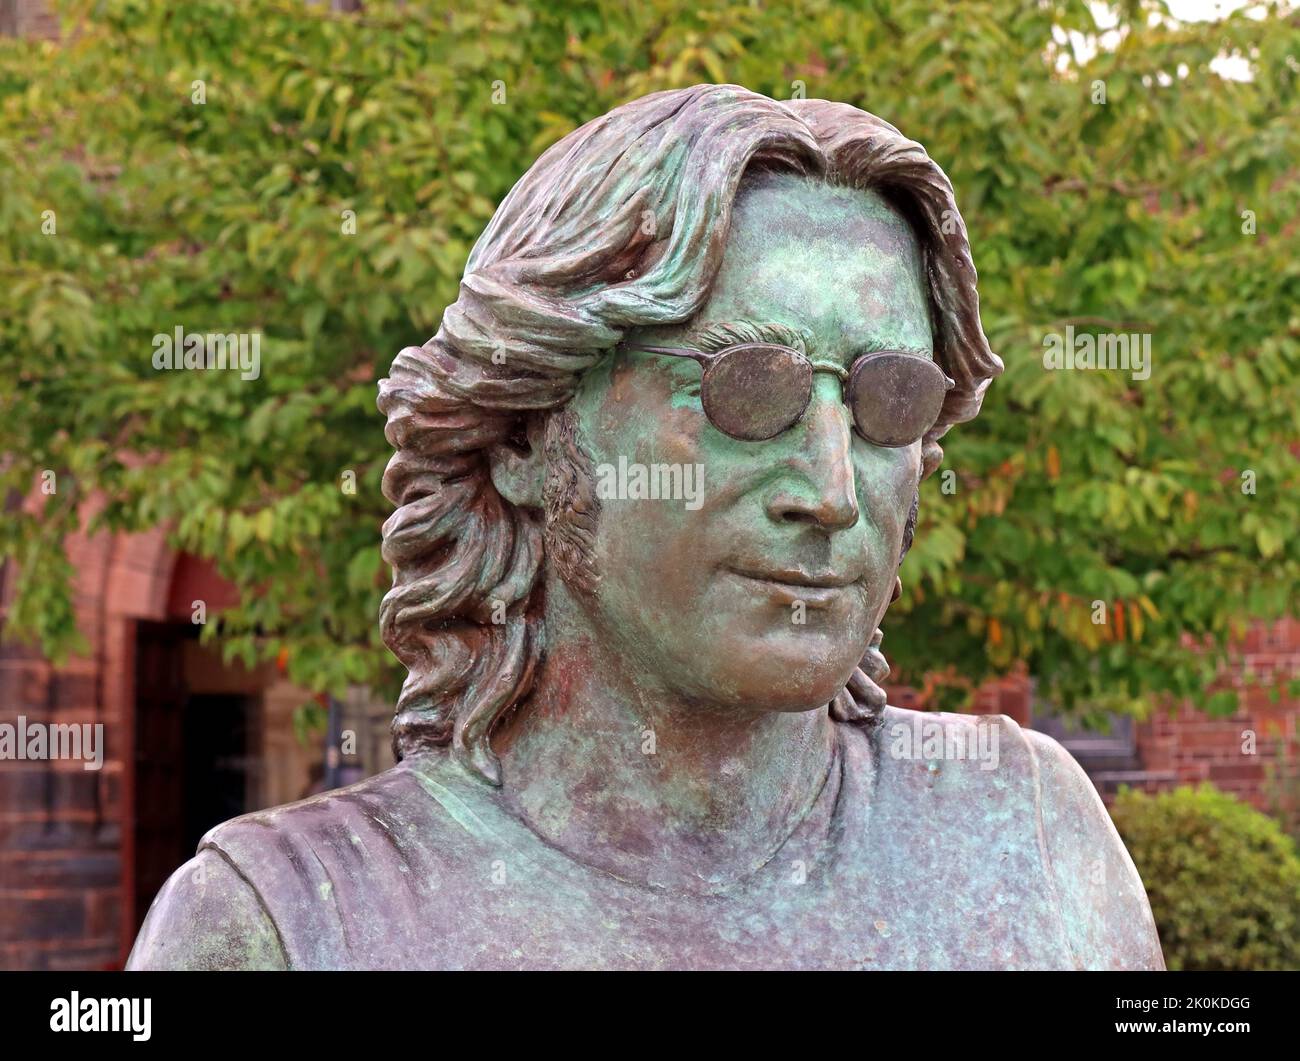 John Lennon « imagine » signe de la paix statue de bronze, par Laura Lian, au pied de Penny Lane, église St Barnapos, Liverpool, Merseyside, Angleterre, ROYAUME-UNI, L18 Banque D'Images